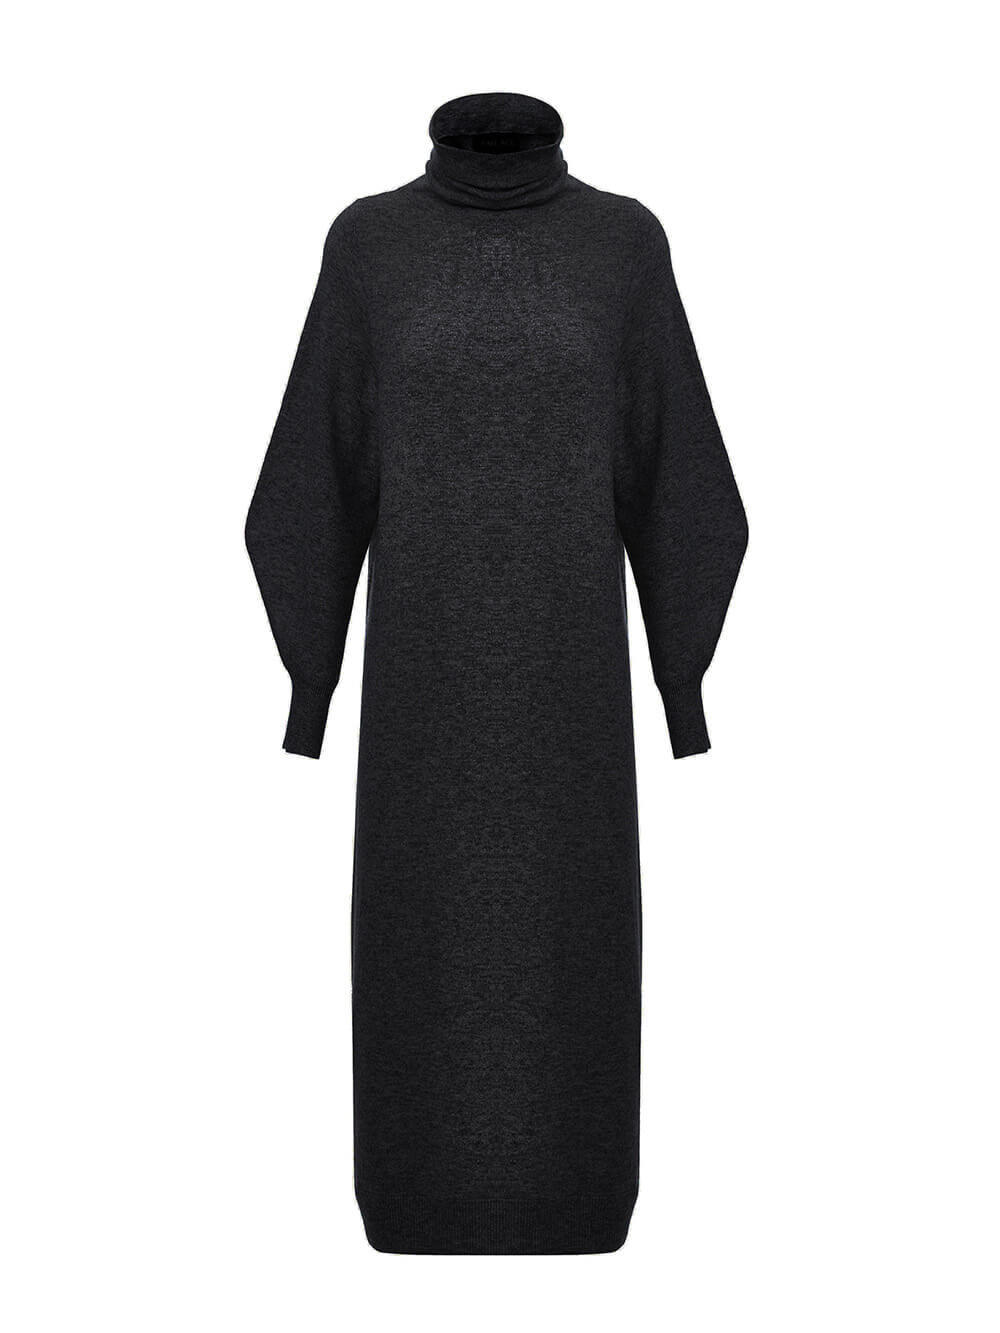 Женское платье черного цвета из шерсти и кашемира